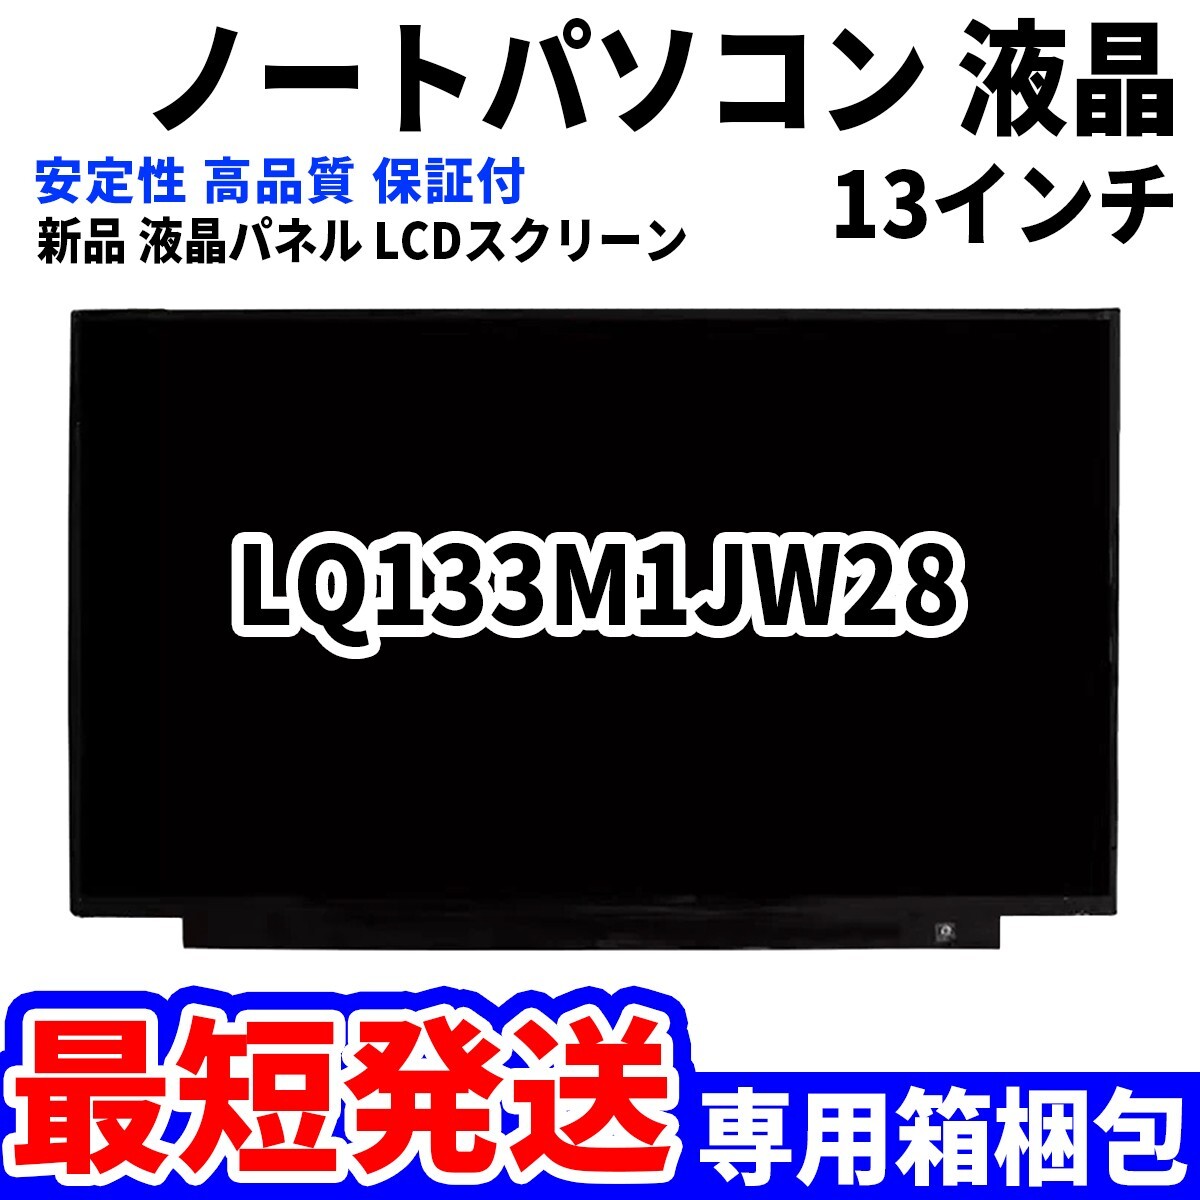 【最短発送】パソコン 液晶パネル LQ133M1JW28 13.3インチ 高品質 LCD ディスプレイ 交換 D-015の画像1